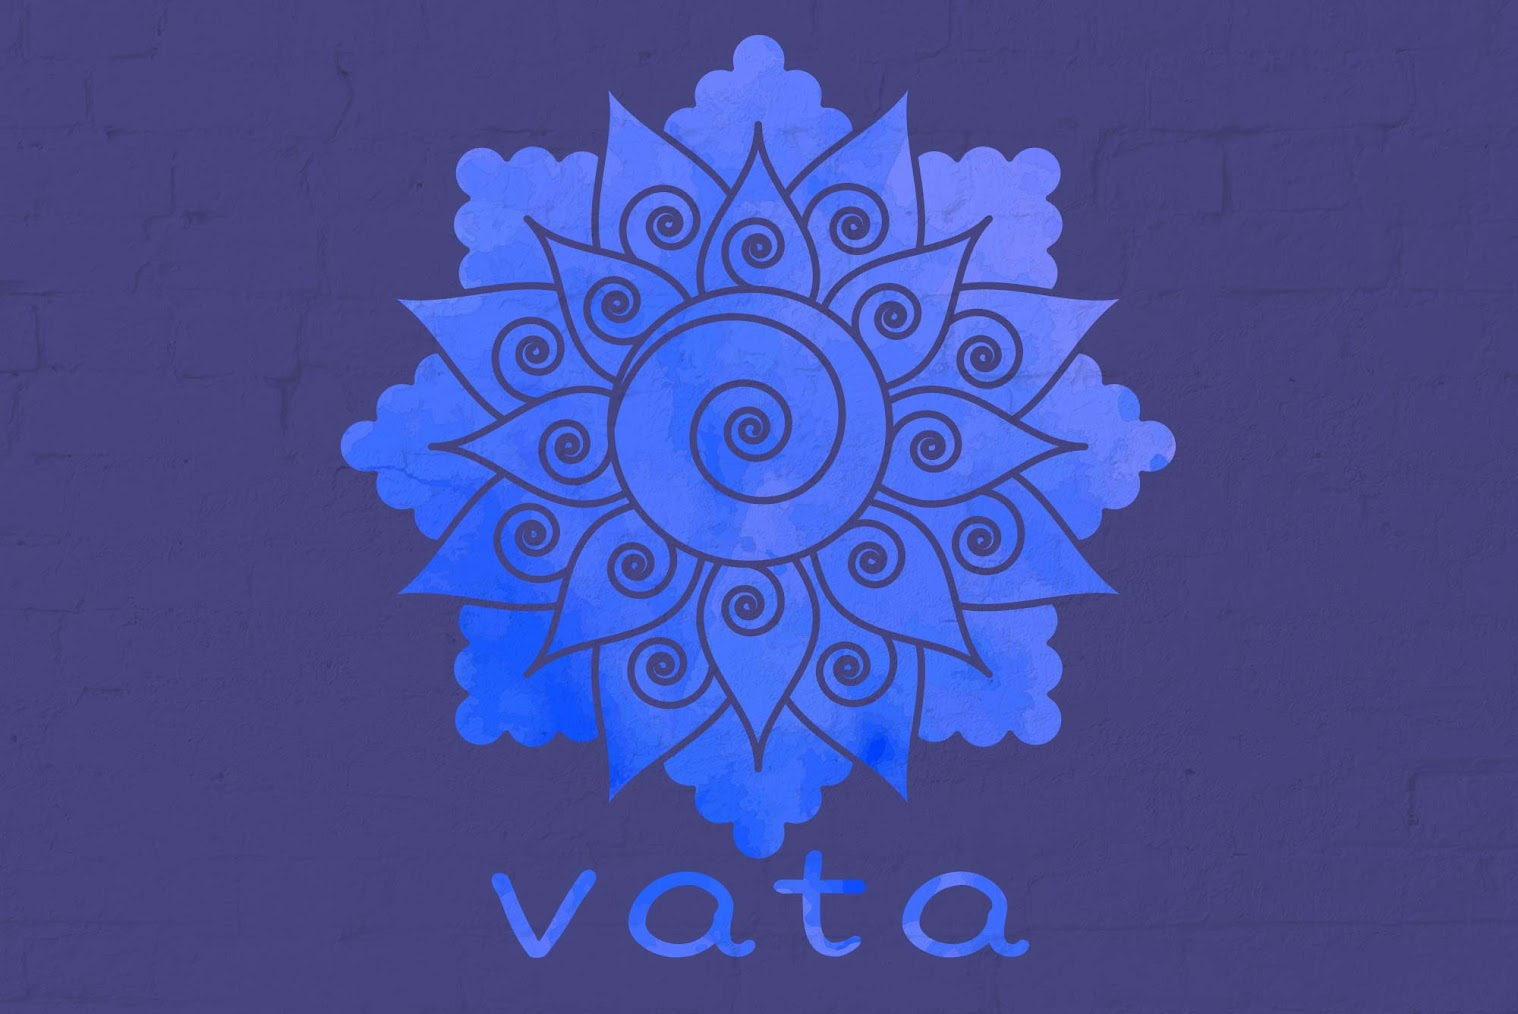 Vyana and Udana Vayu: Functions, Imbalance Signs and How to